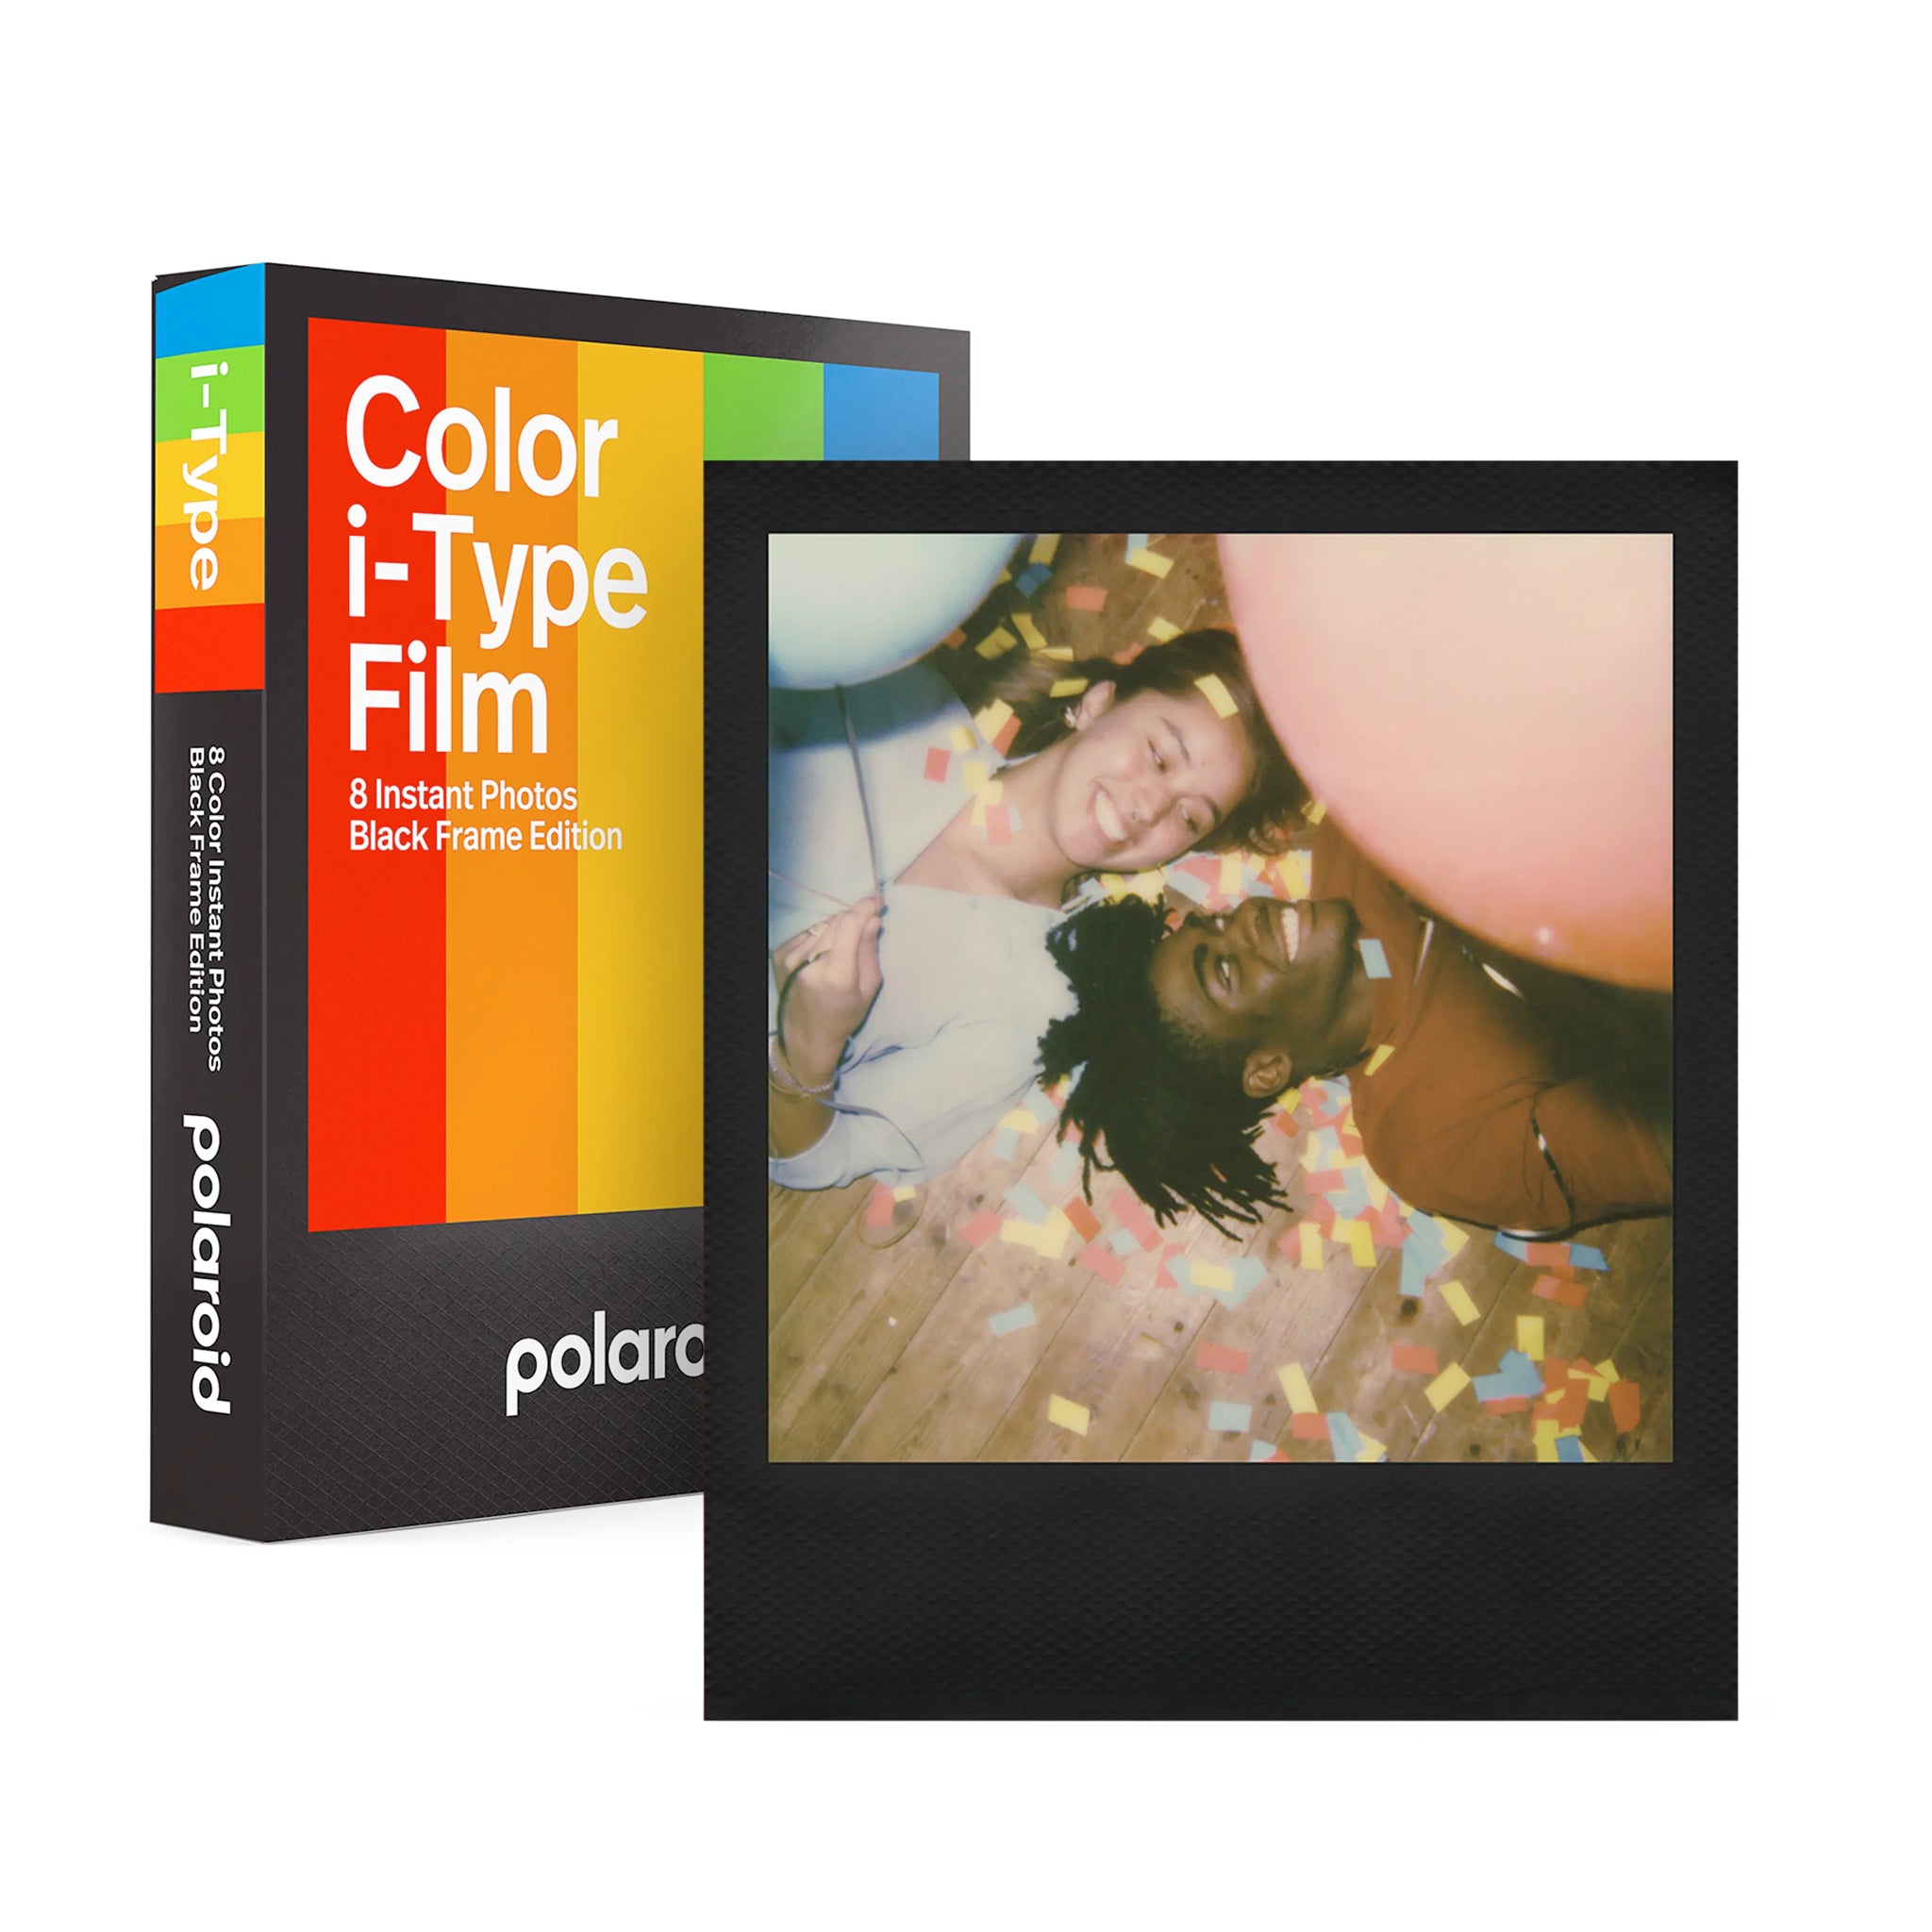 Película Color i-Type Black Frame